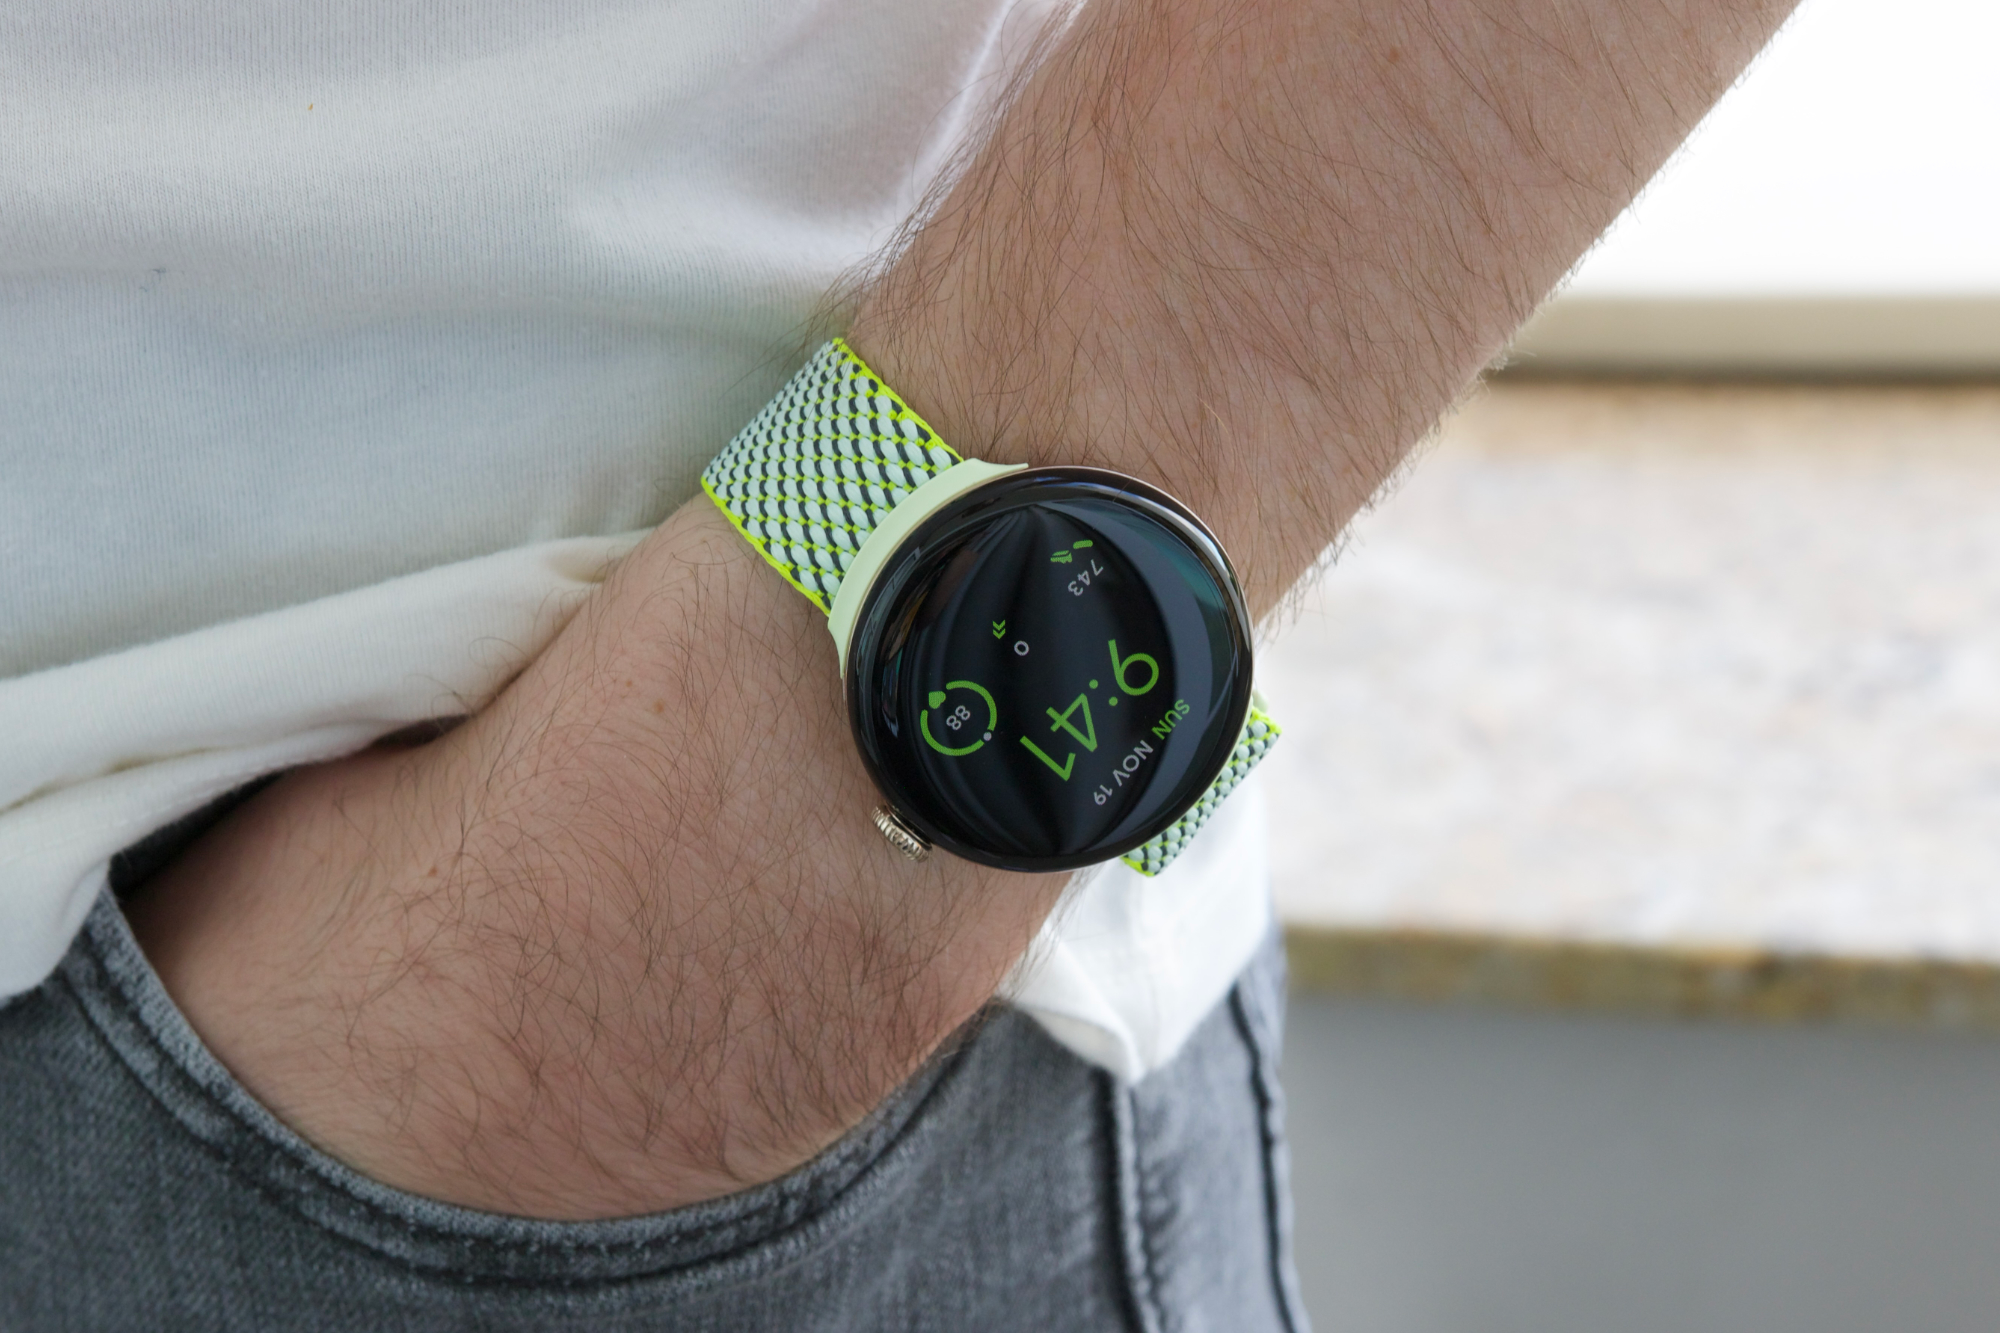 Alguém usando o Google Pixel Watch 2 com uma pulseira de tecido amarelo/verde.